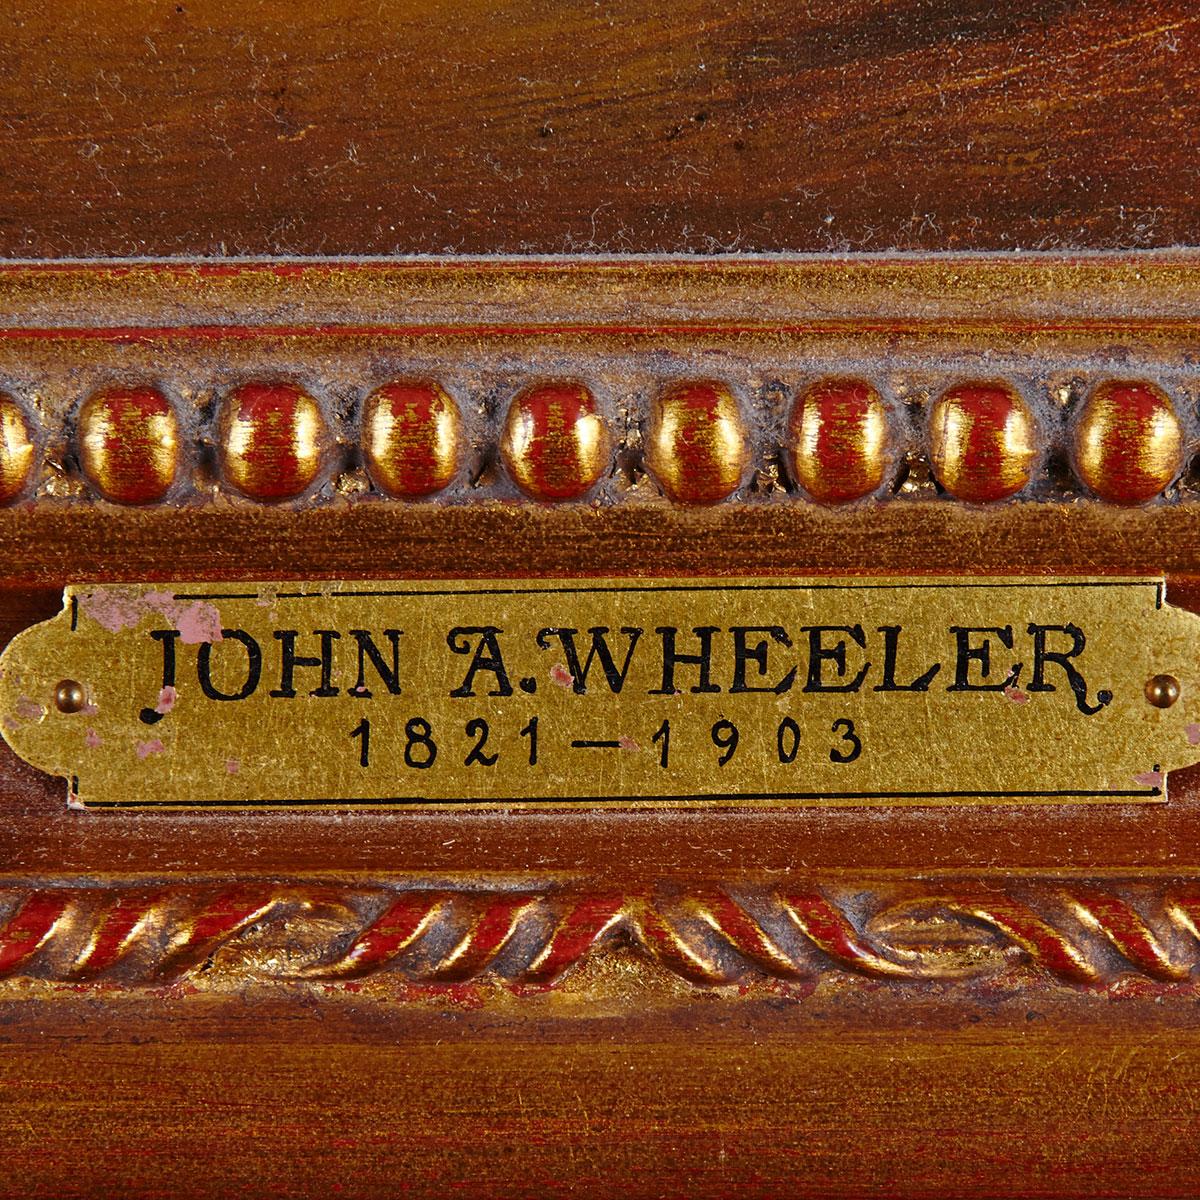 John Alfred Wheeler Sr. (1821-1903)